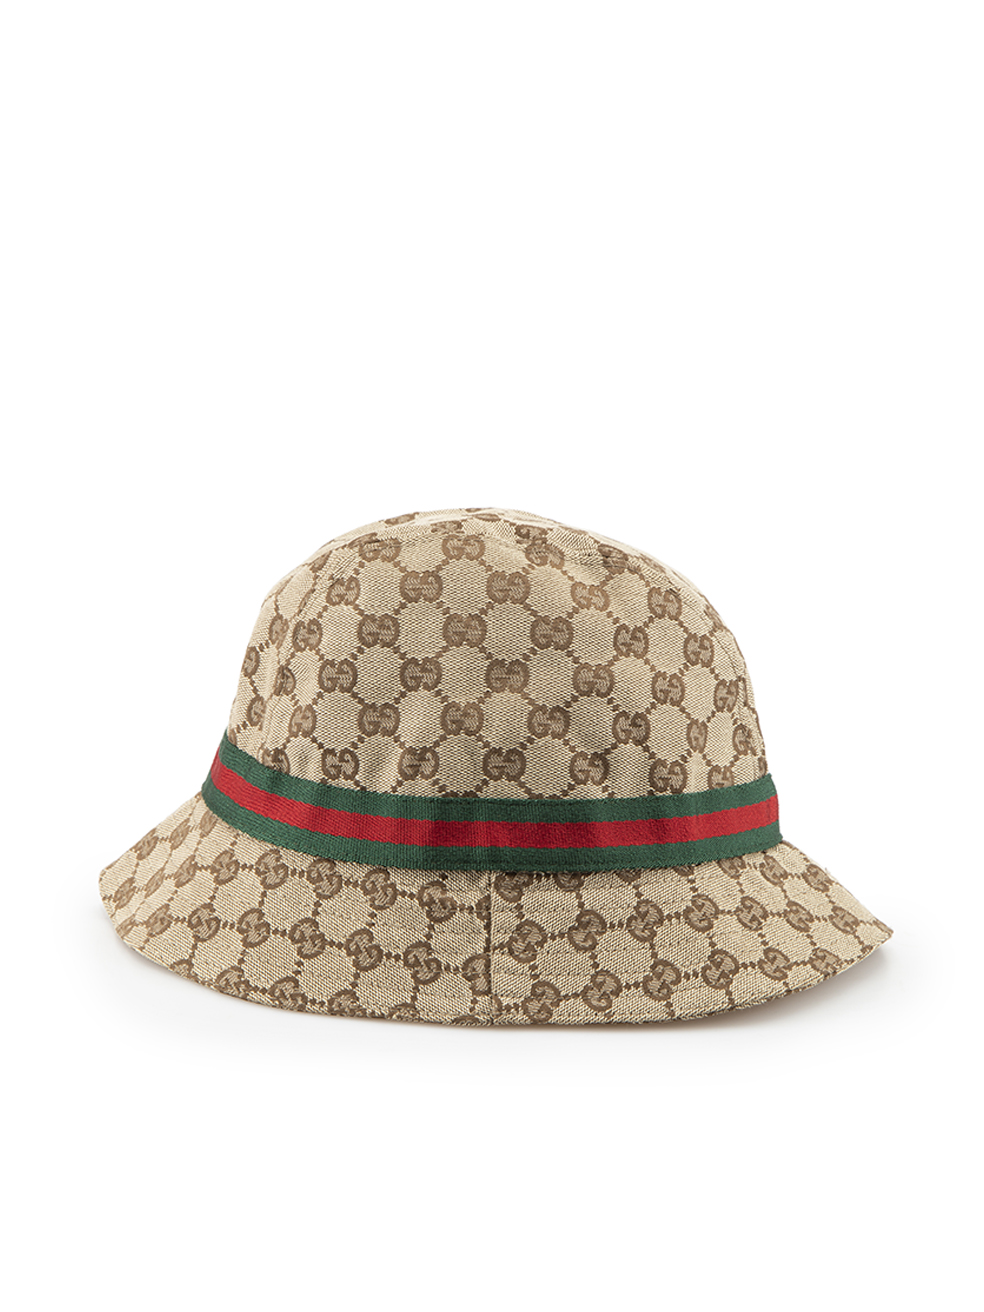 Louis Vuitton bucket hat, Men's Fashion, Watches & Accessories